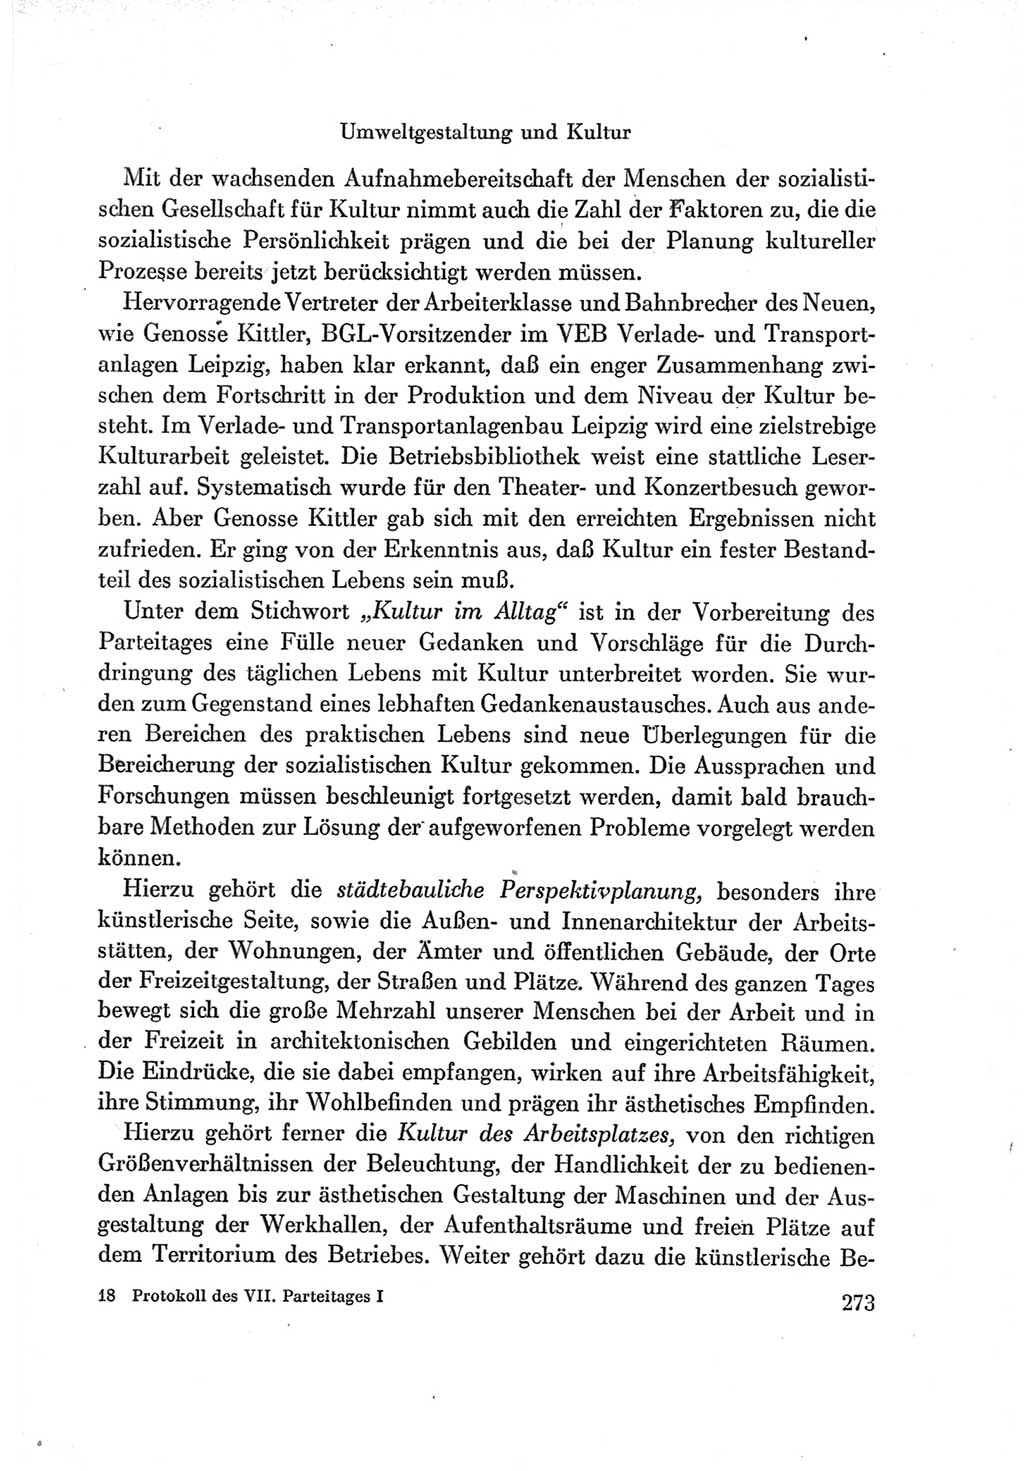 Protokoll der Verhandlungen des Ⅶ. Parteitages der Sozialistischen Einheitspartei Deutschlands (SED) [Deutsche Demokratische Republik (DDR)] 1967, Band Ⅰ, Seite 273 (Prot. Verh. Ⅶ. PT SED DDR 1967, Bd. Ⅰ, S. 273)